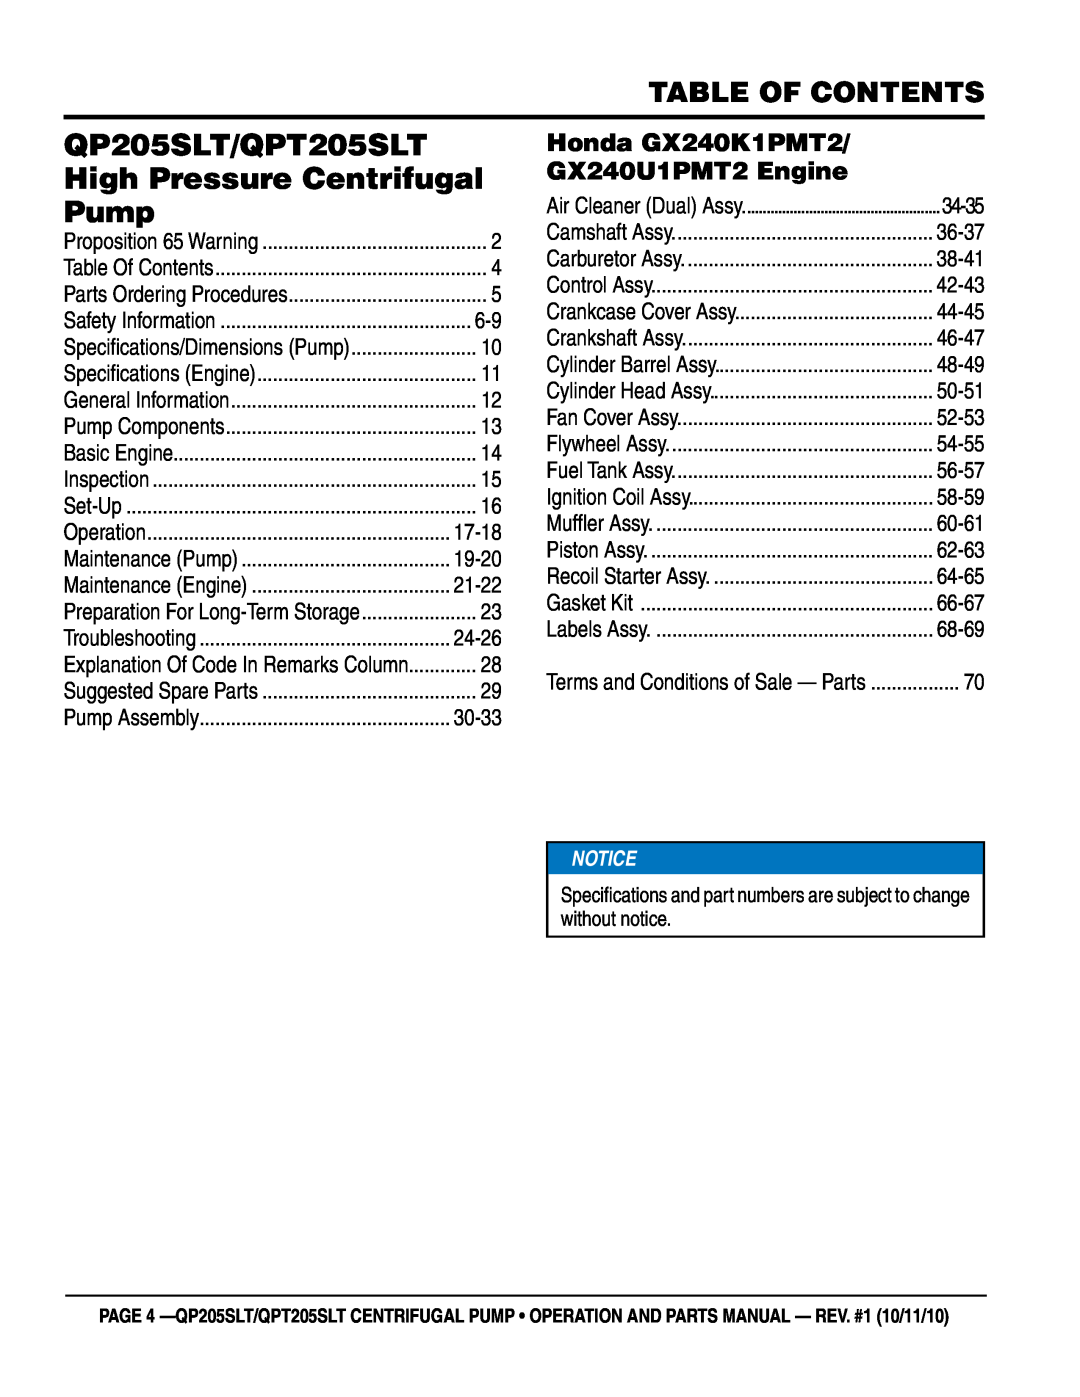 Multiquip Table of Contents, Honda GX240K1PMT2, GX240U1PMT2 Engine, QP205SLT/QPT205SLT, High Pressure Centrifugal, Pump 